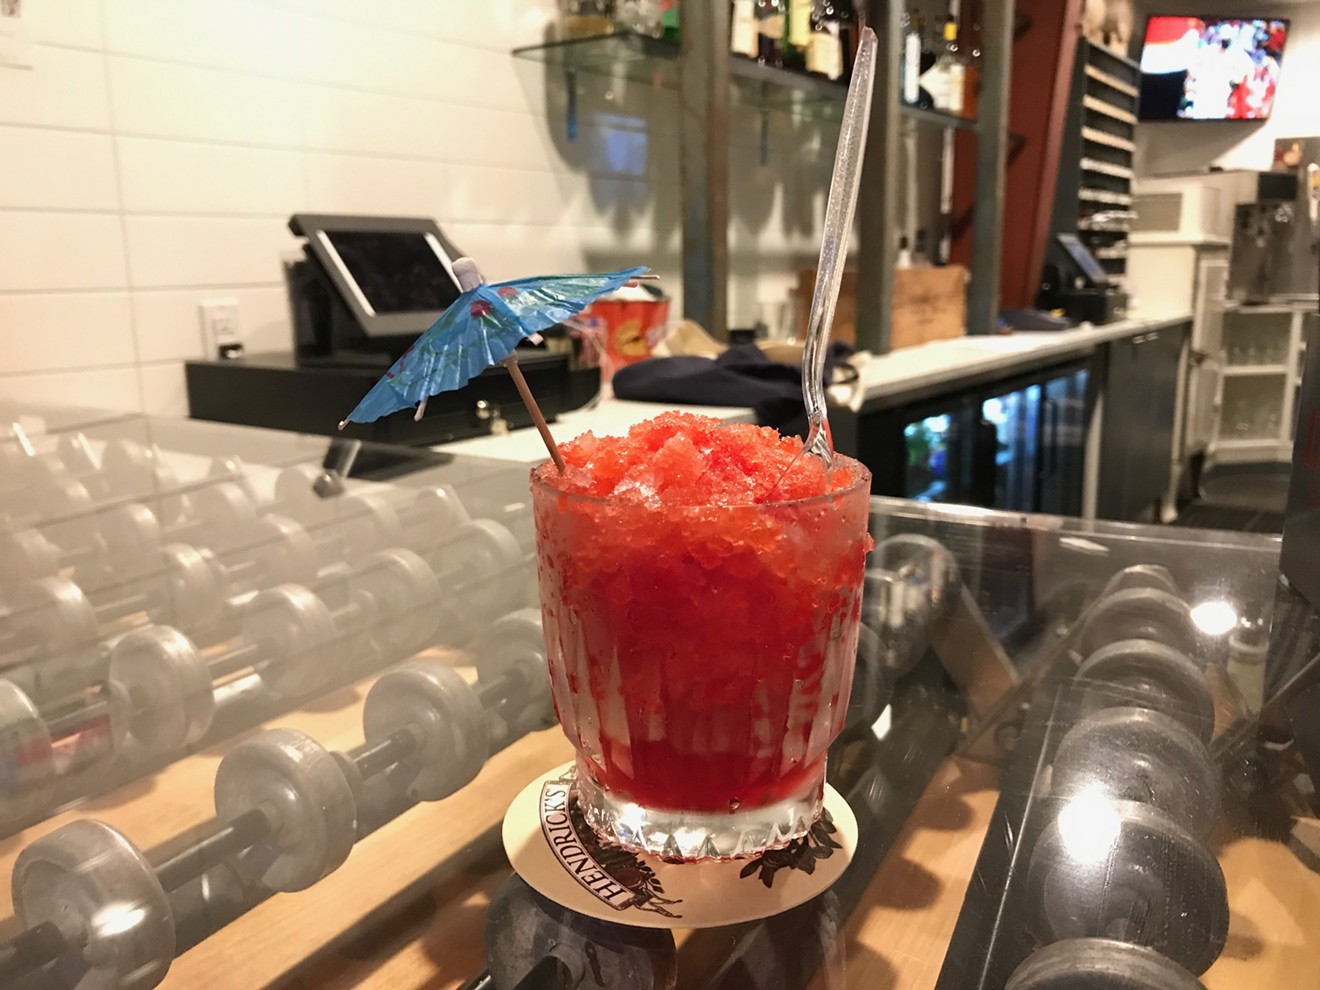 The vodka-spiked tiger's blood snowball atop a conveyer belt bar.